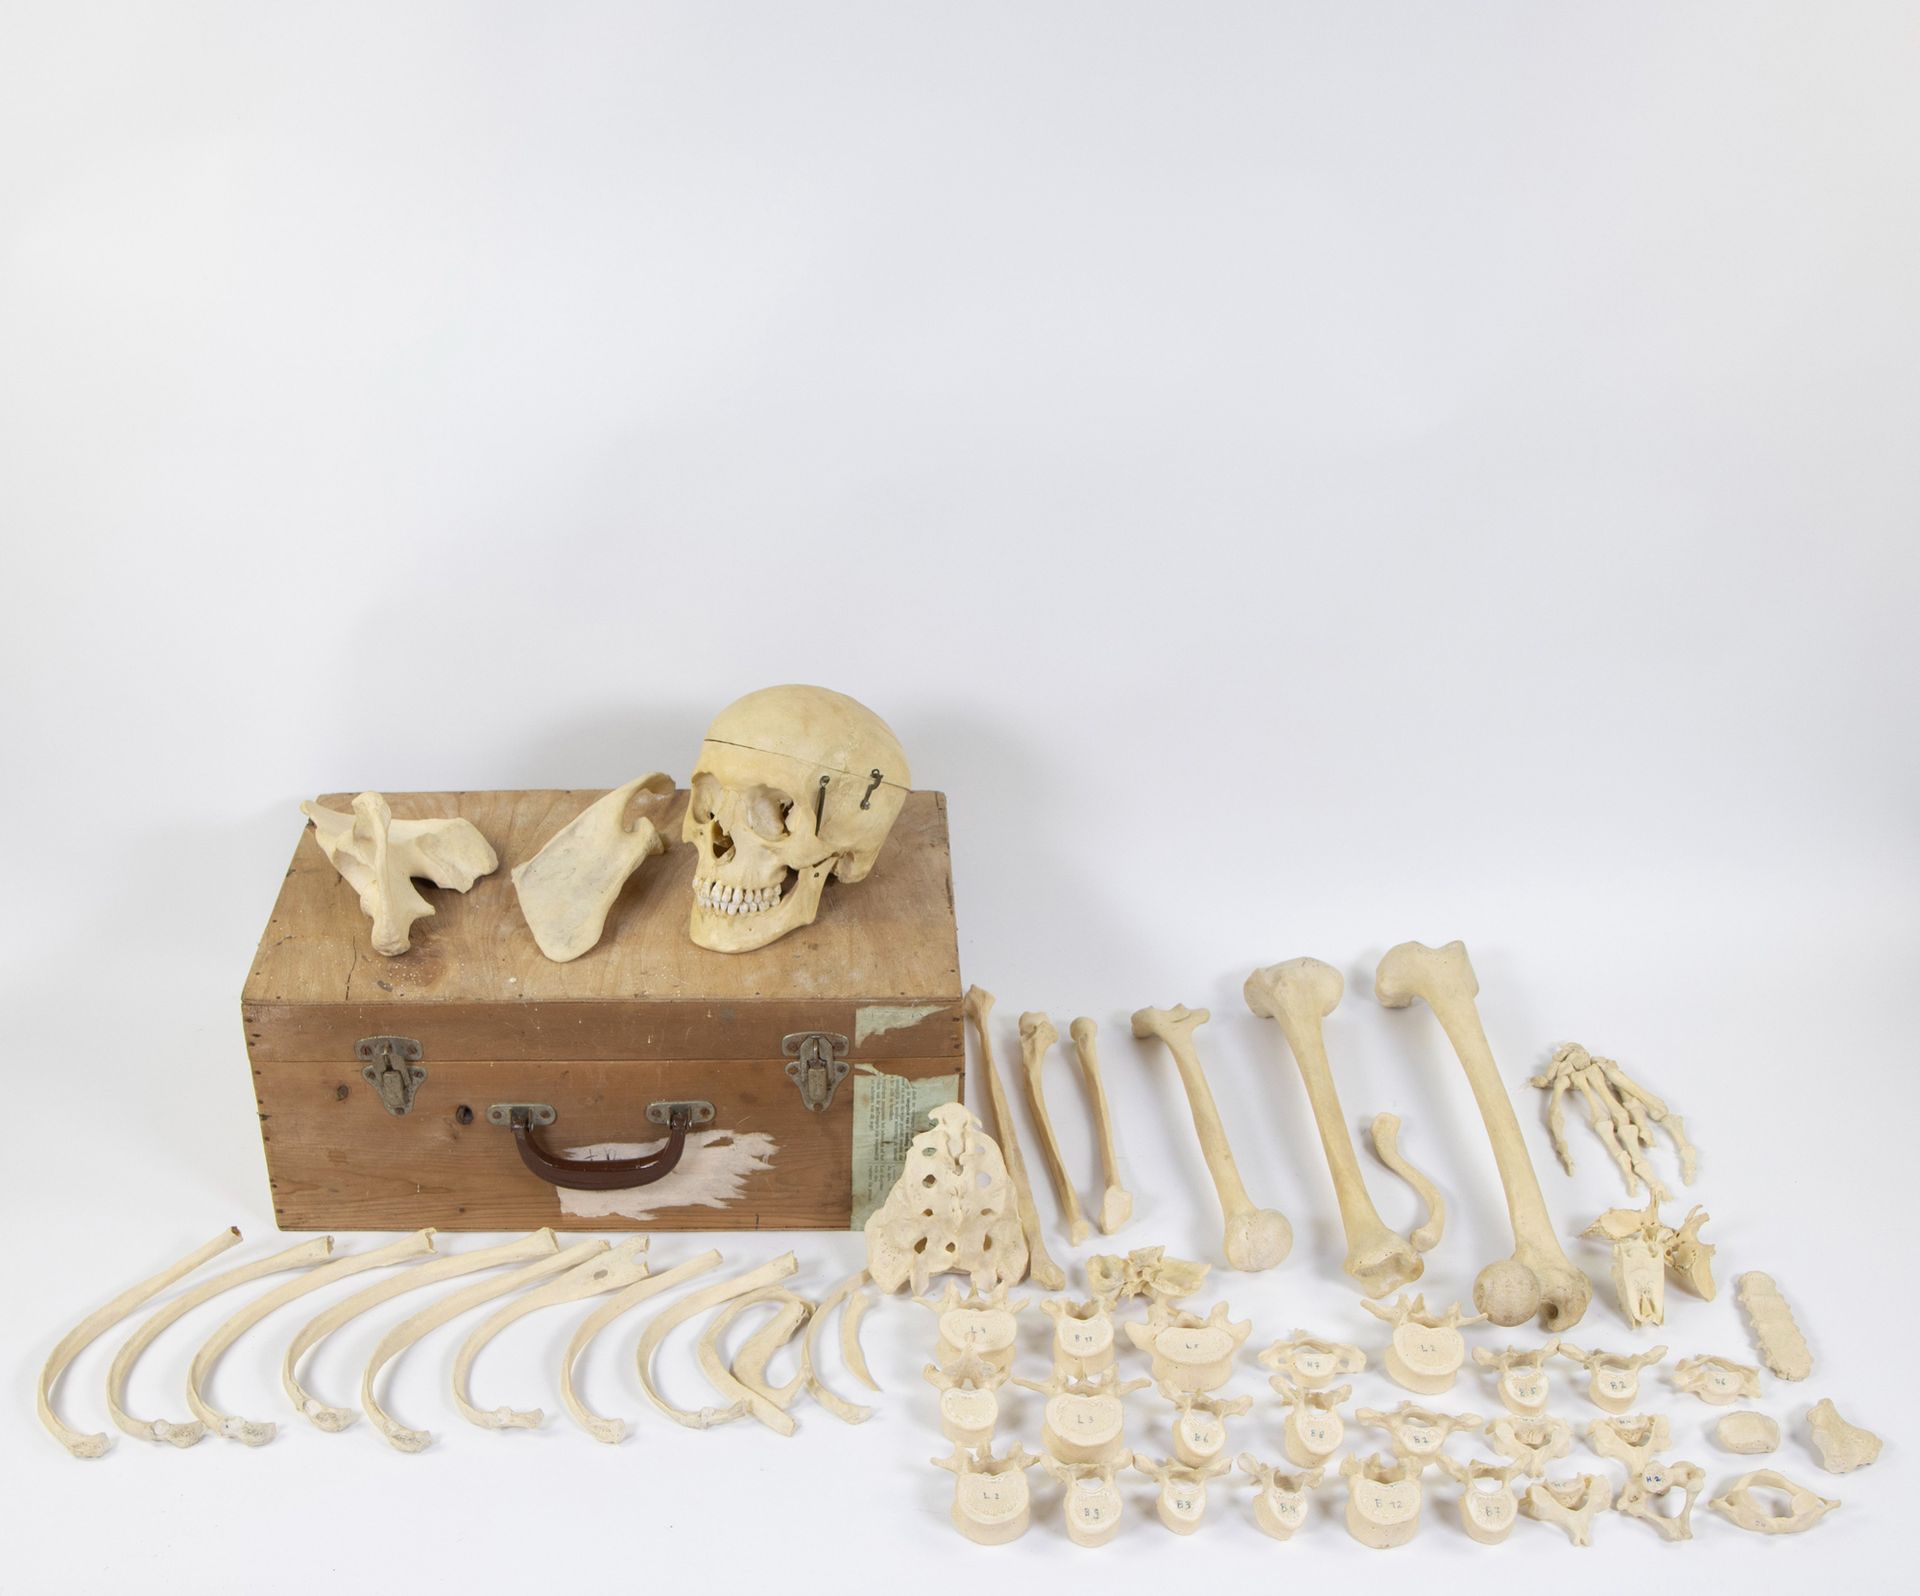 Null 木箱中的骨架部件，研究对象。
摆放在木箱中的骨骼，研究对象。